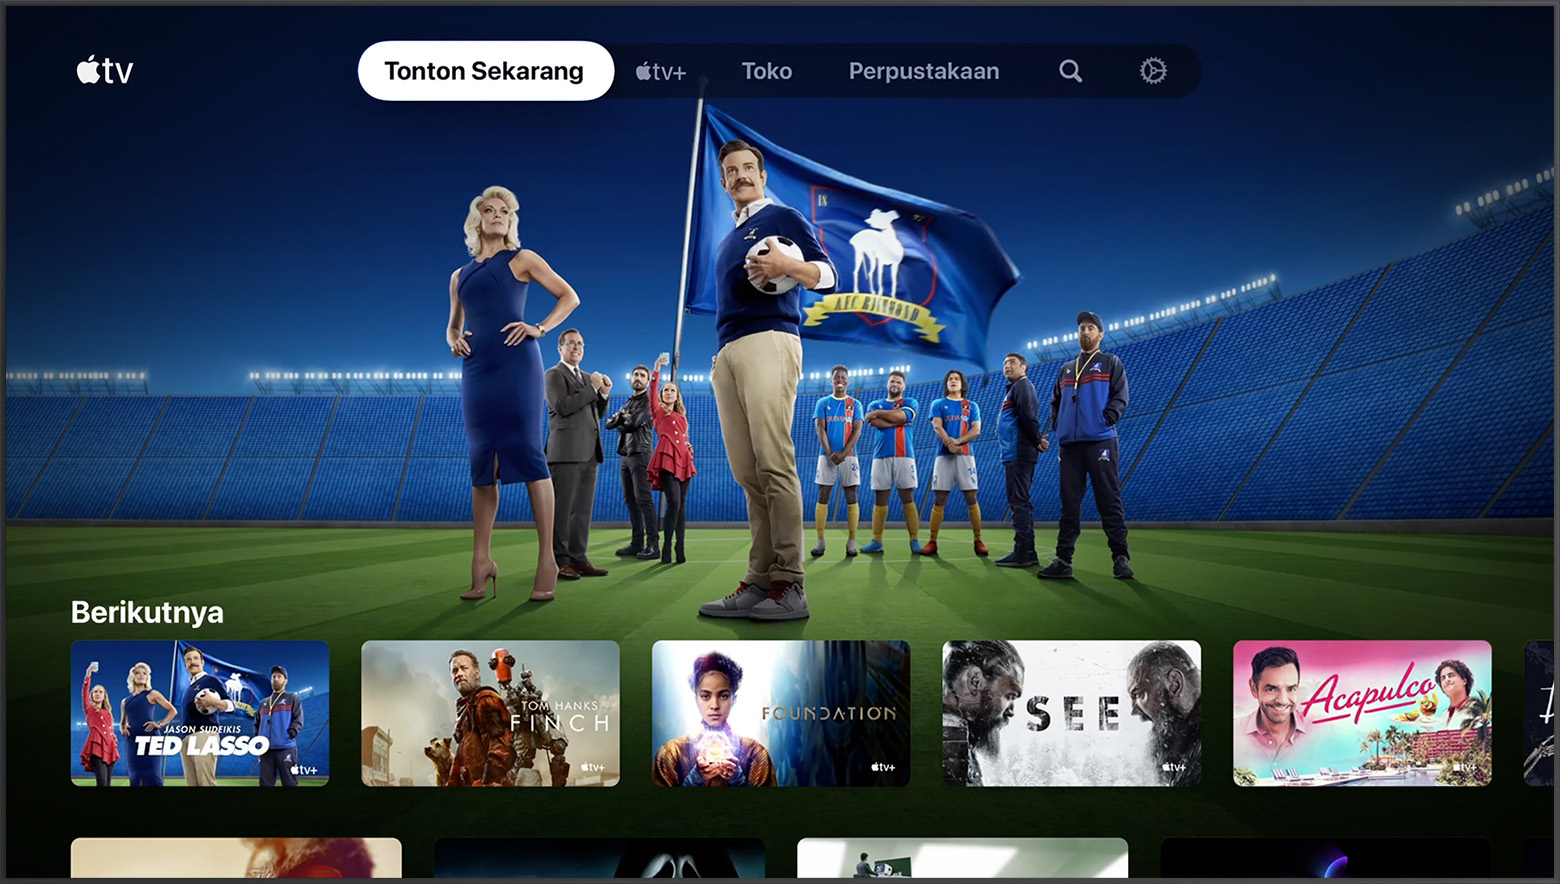 Tab Tonton Sekarang di app Apple TV di smart TV